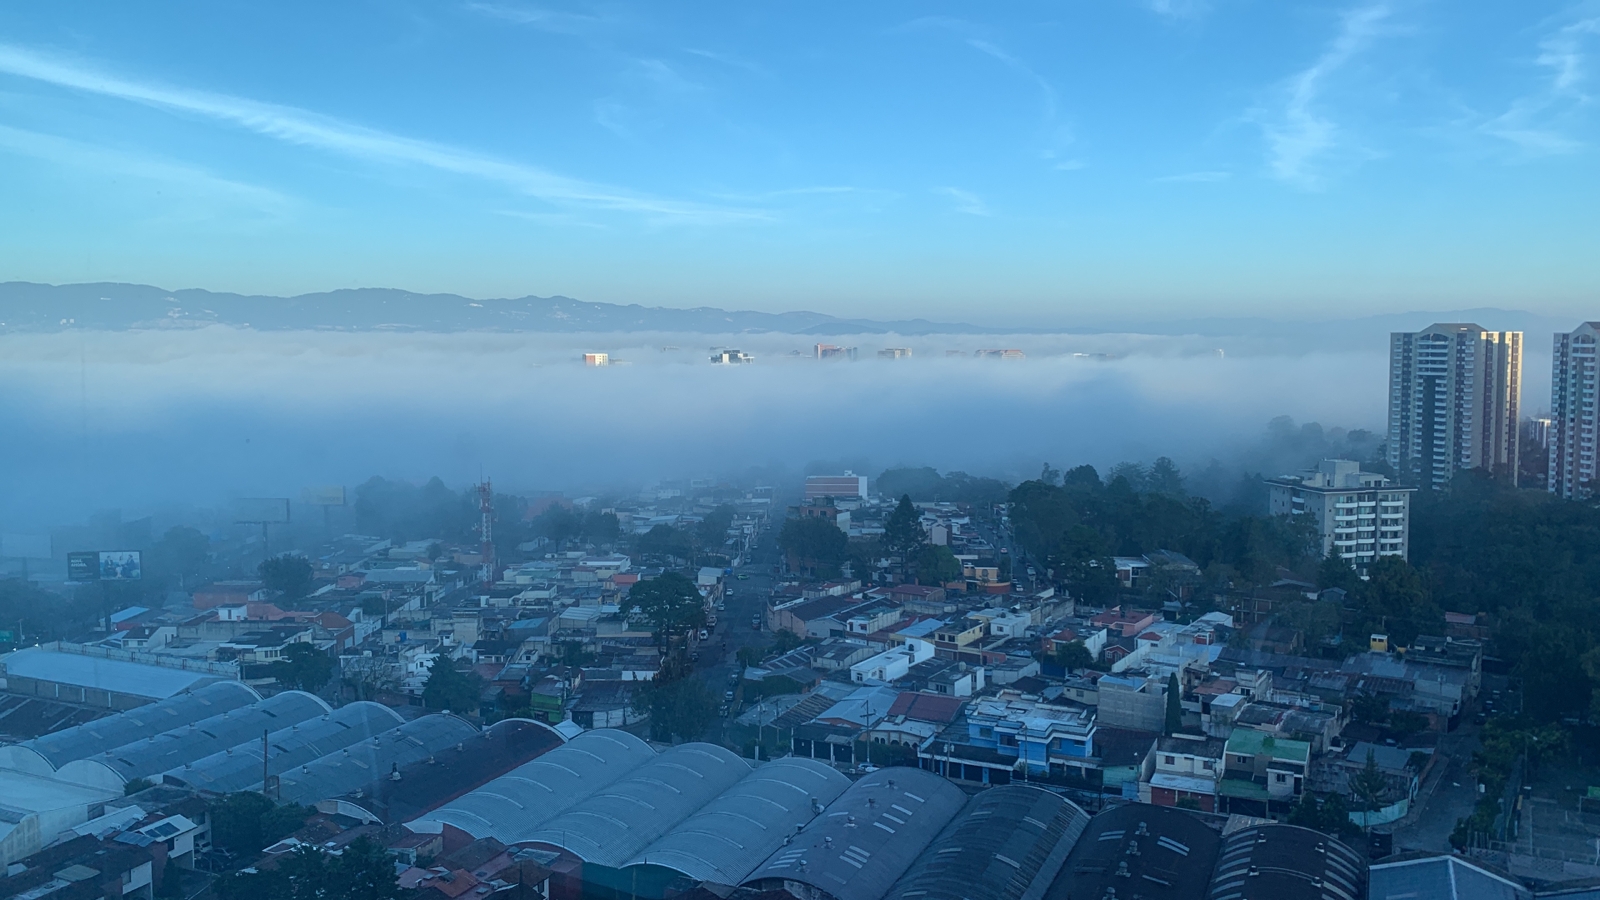 El área metropolitana amaneció cubierta por niebla este lunes 16 de enero. (Foto Prensa Libre: J. D. González)